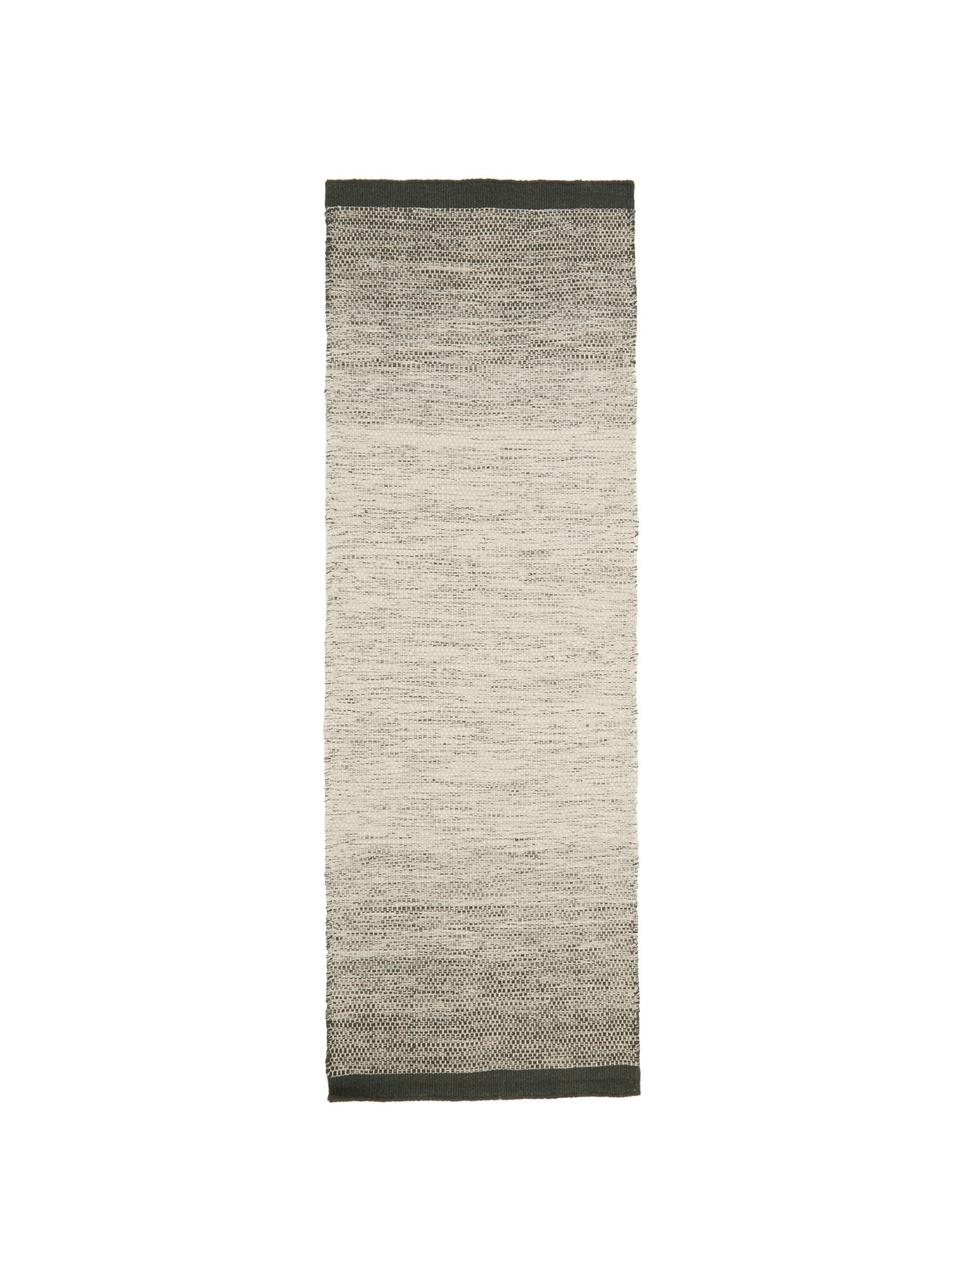 Handgewebter Wollläufer Lule mit Farbverlauf in Beige/Grün, 70% Wolle, 30% Baumwolle, Dunkelgrün, Beige, 80 x 250 cm